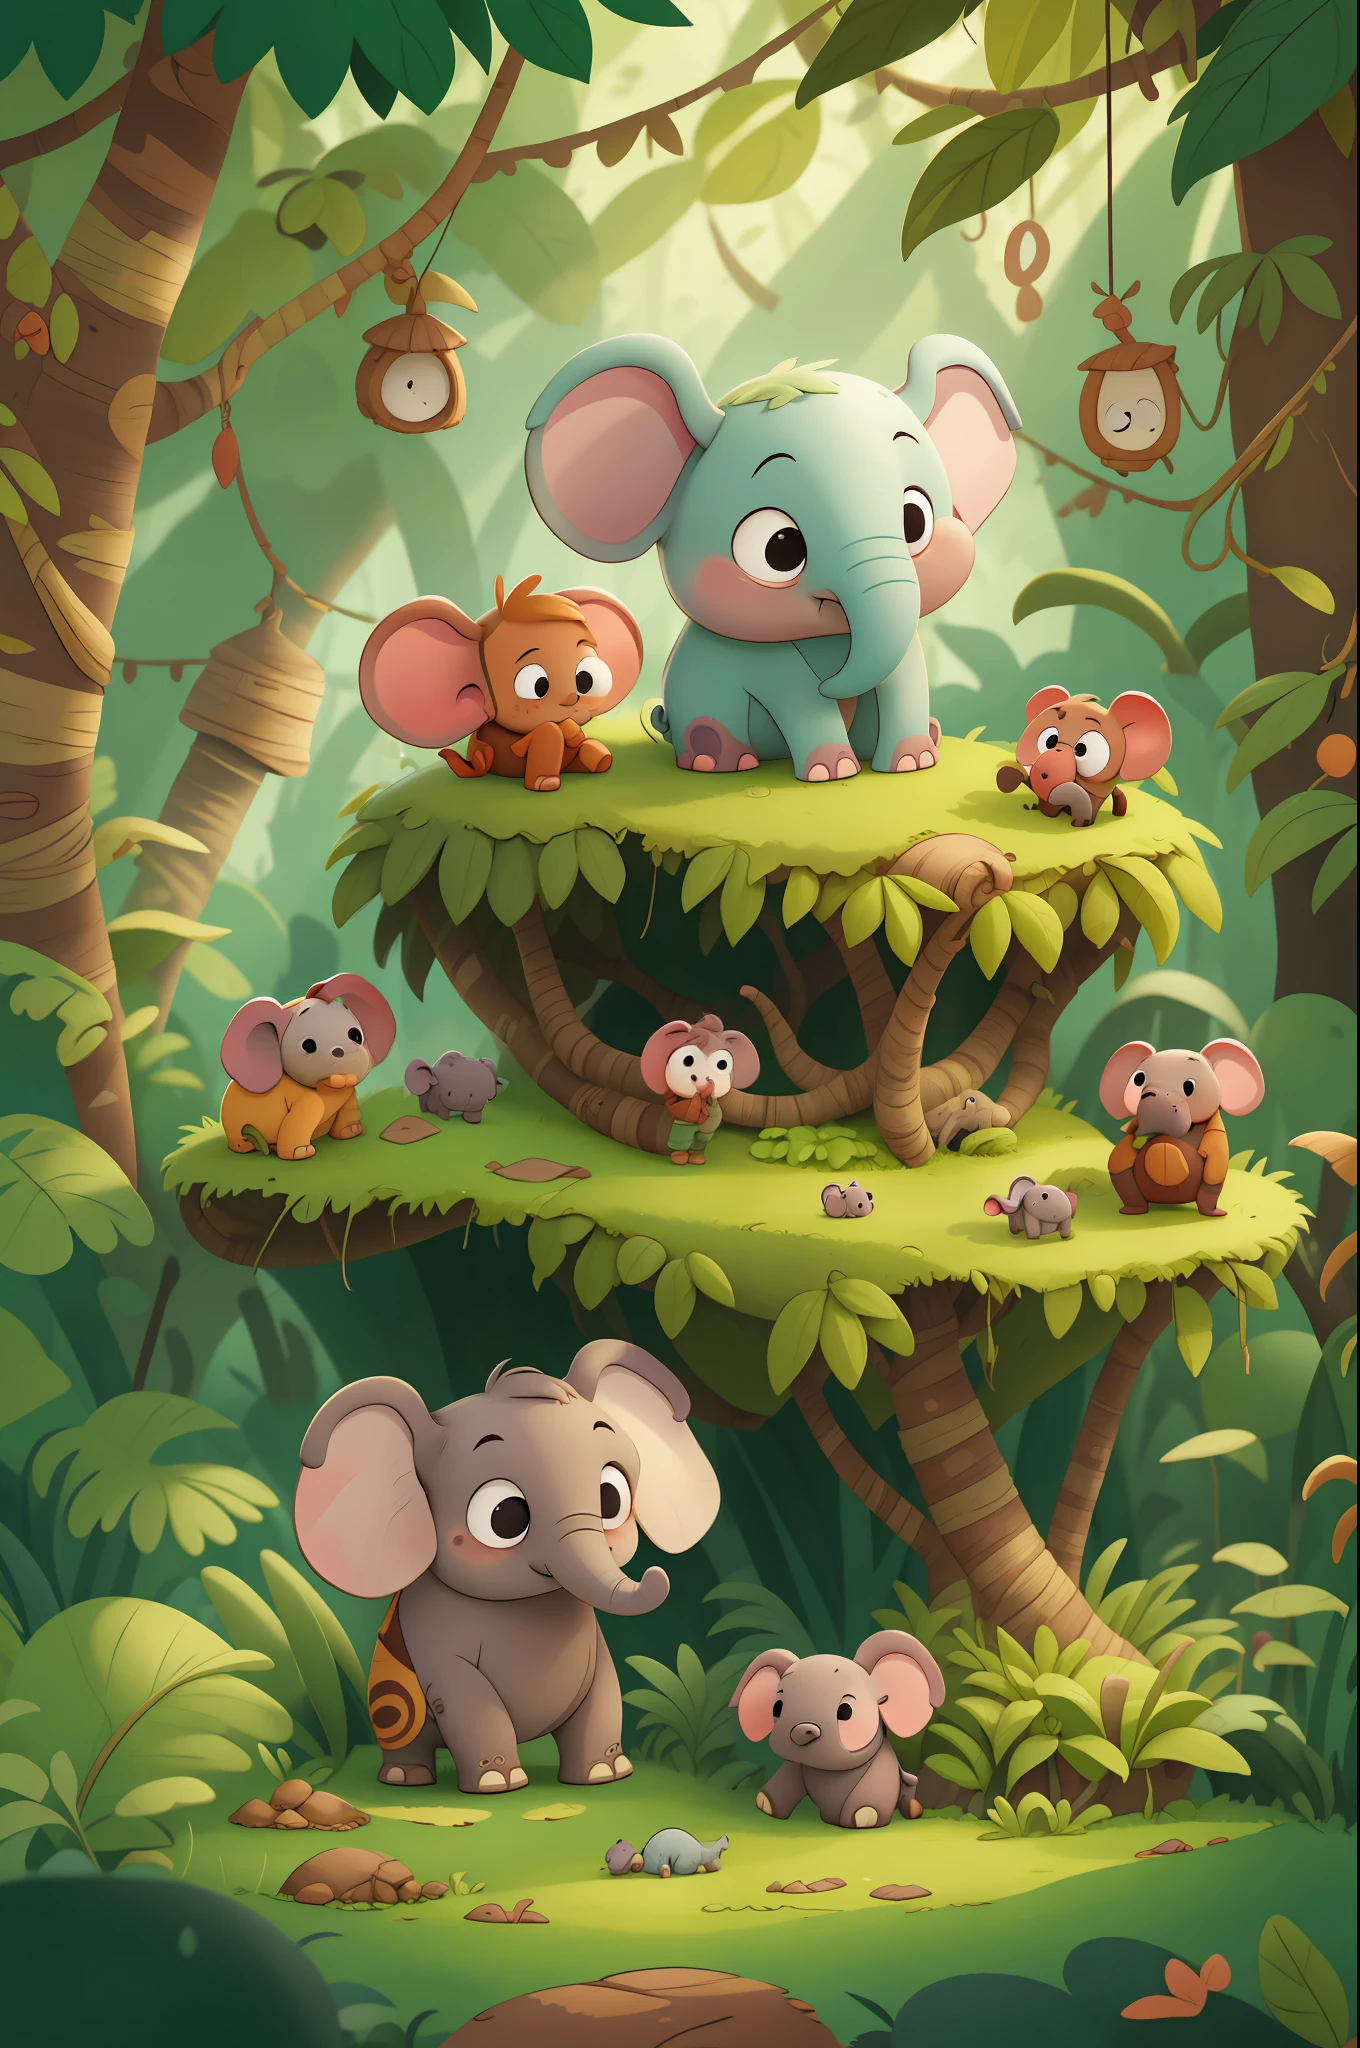 Era uma vez um pequeno elefante chamado Doug que vivia na selva com sua família. Doug era muito curioso e adorava explorar o mundo ao seu redor. livro infantil, no estilo de animação.